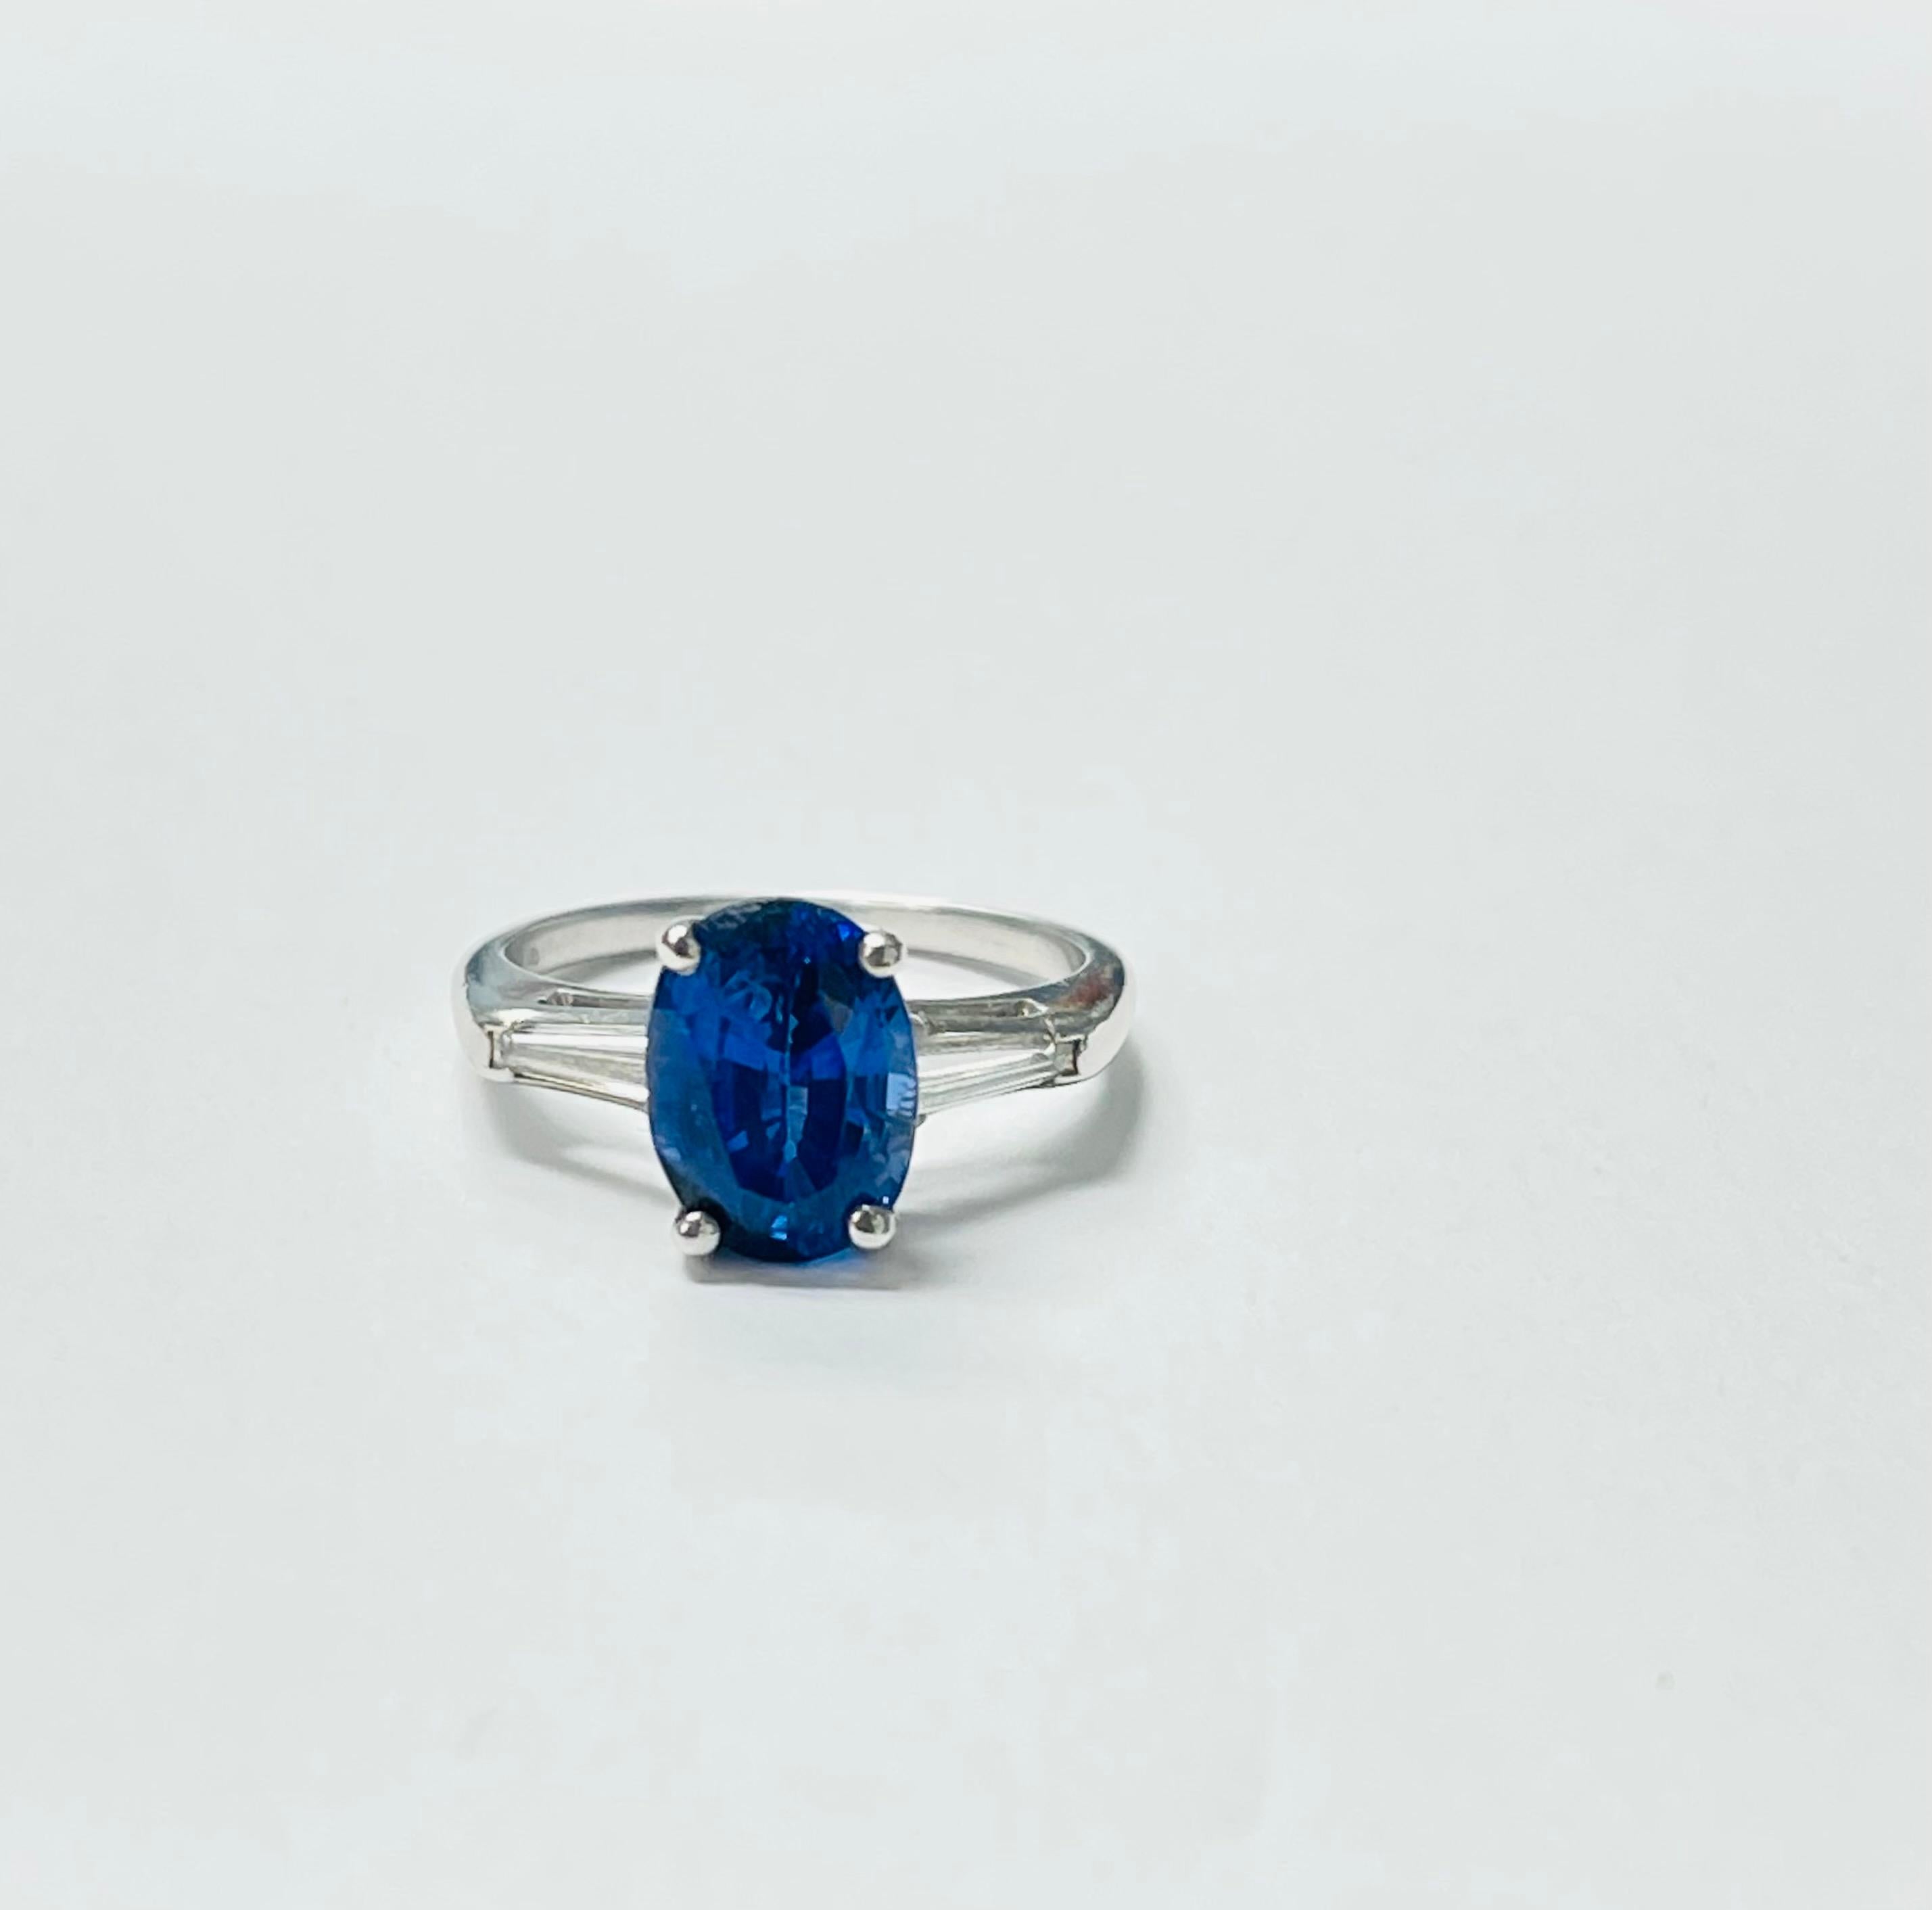 Wunderschöner Verlobungsring mit königsblauem Saphir und Diamant, handgefertigt in Platin. 
Die Einzelheiten sind wie folgt: 
Gewicht des blauen Saphirs: 3,75 Karat 
Gewicht des Diamanten : 0,25 Karat 
Metall : Platin 
